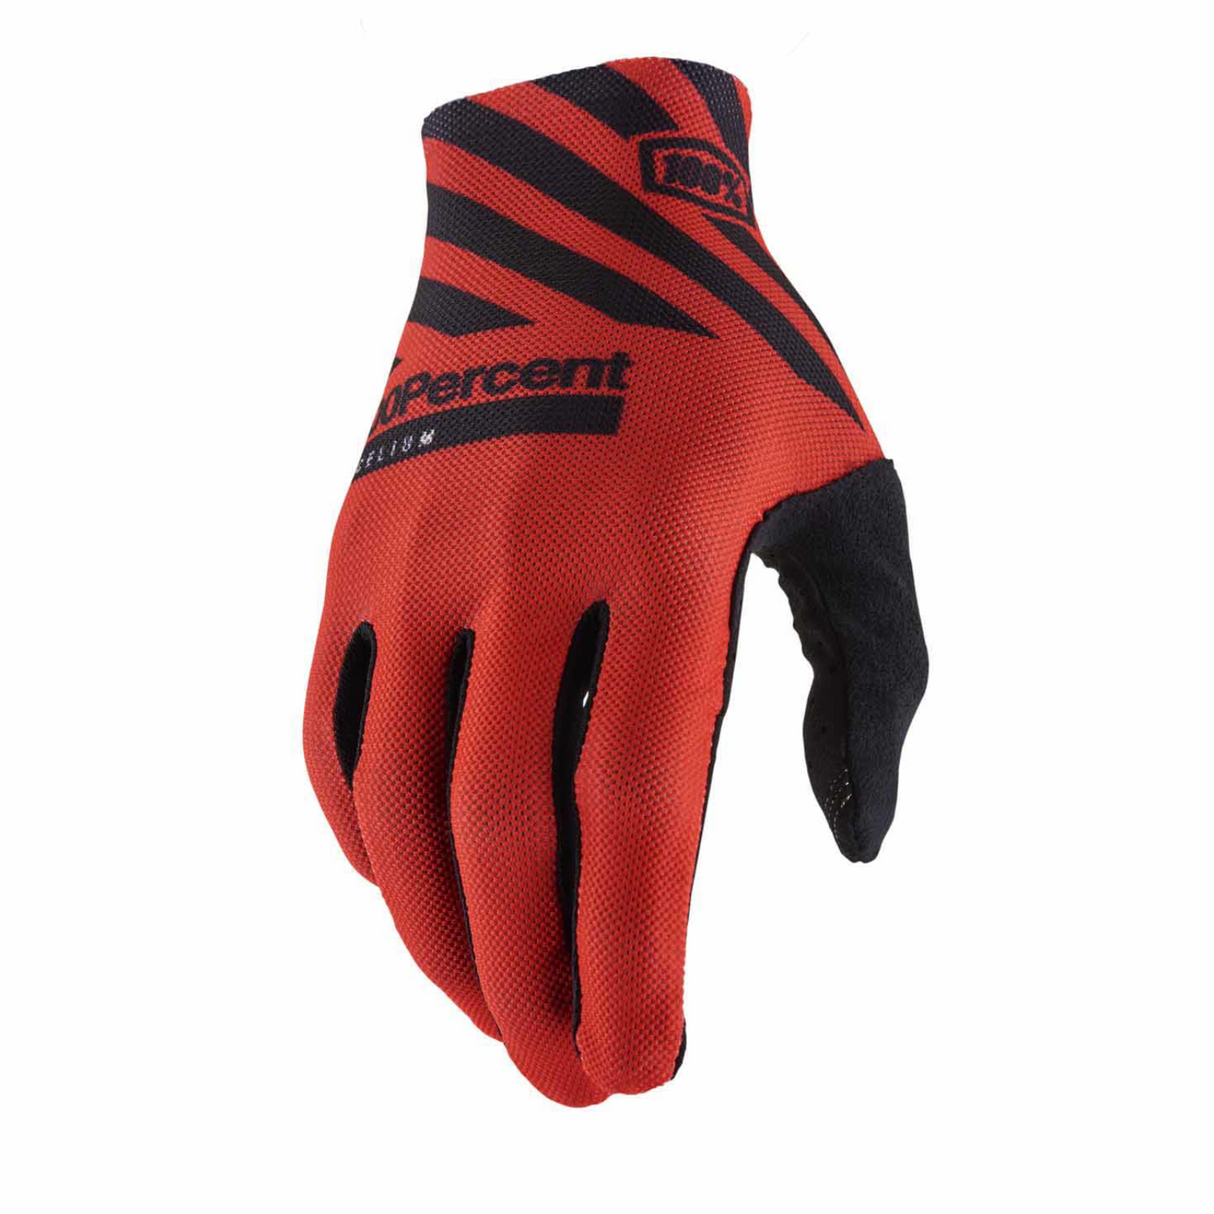 100% CELIUM Full Finger Cycling Mountain Bike Gloves Red - Medium